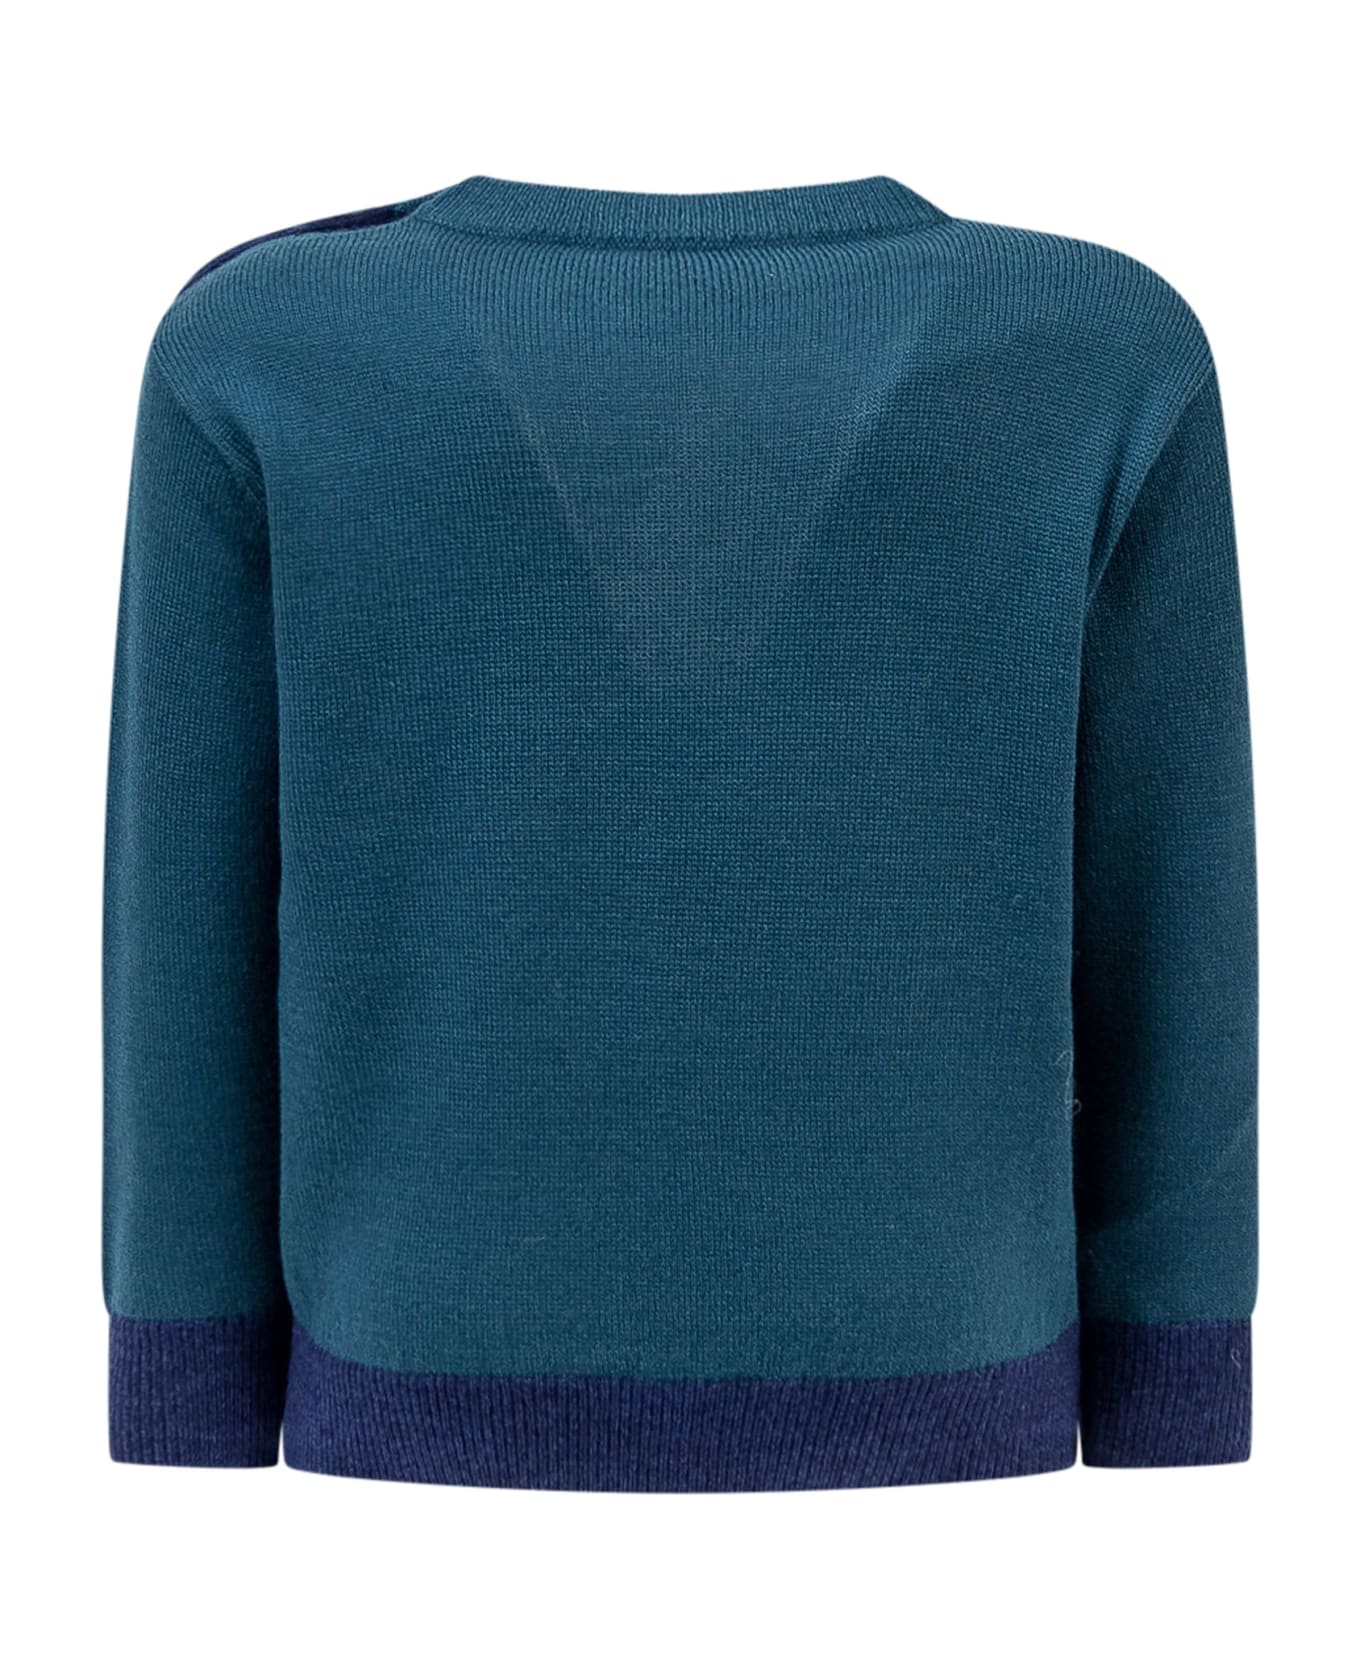 Emporio Armani Pullover Sweater - FANTASIA BLU